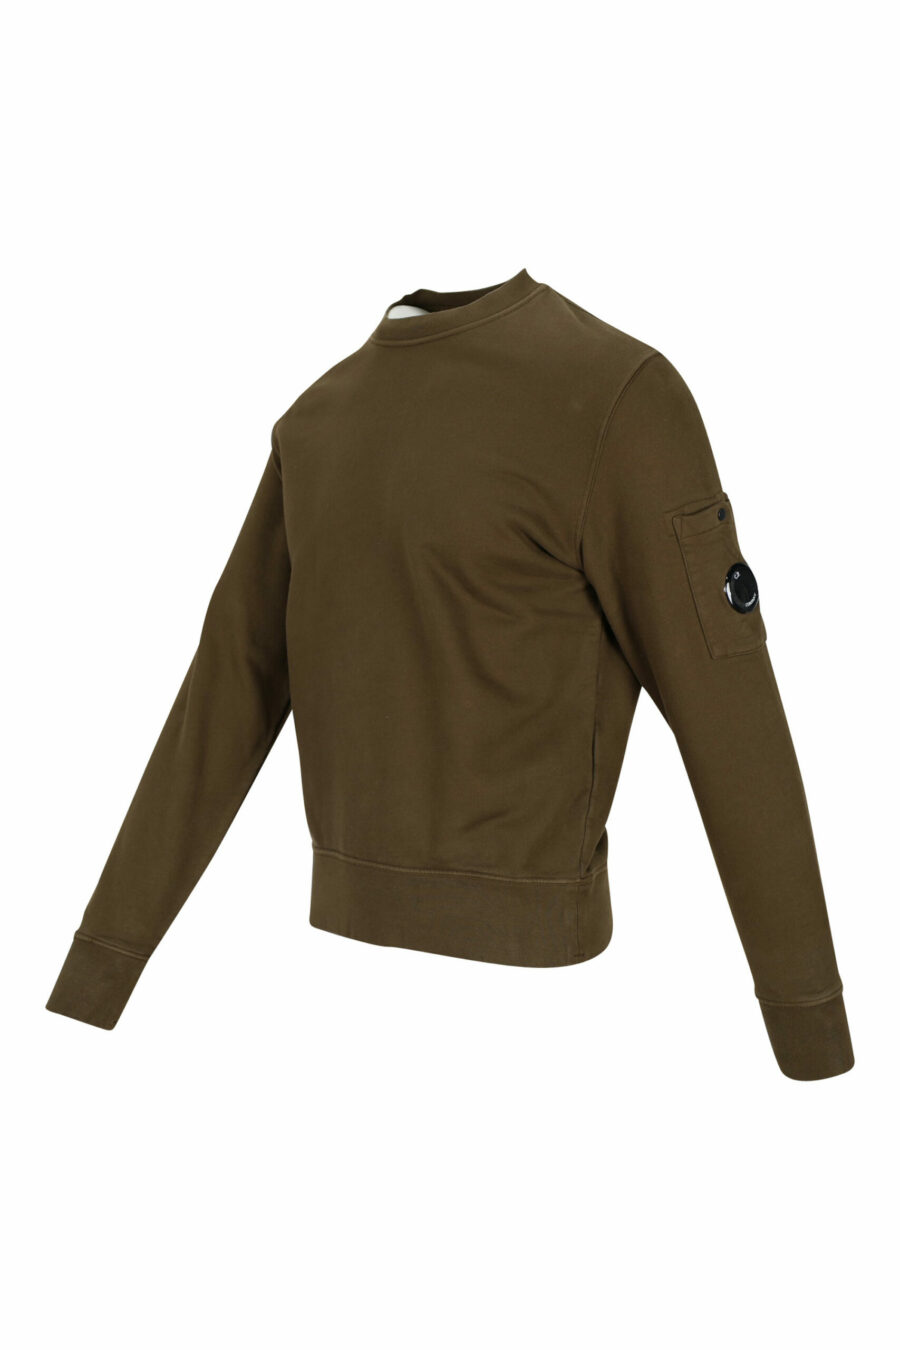 Militärisches grünes Sweatshirt mit seitlicher Logo-Linse - 7620943598582 1 skaliert